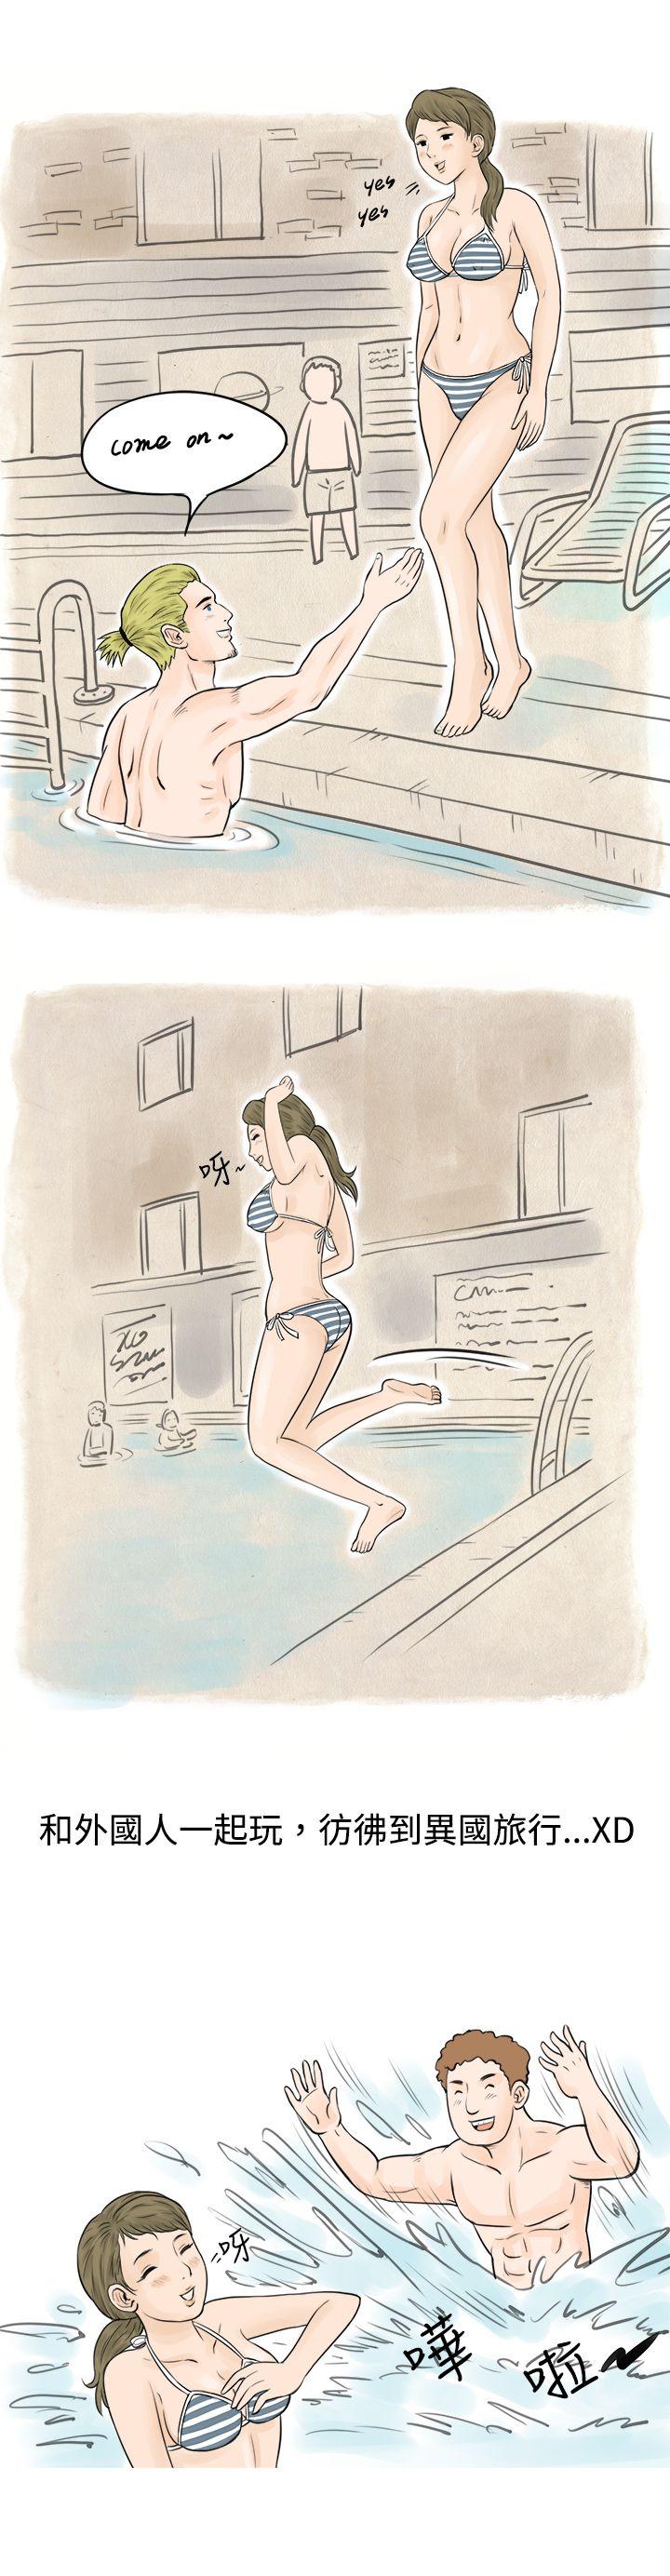 秘密Story  在梨泰院游泳池中的小故事(上) 漫画图片11.jpg